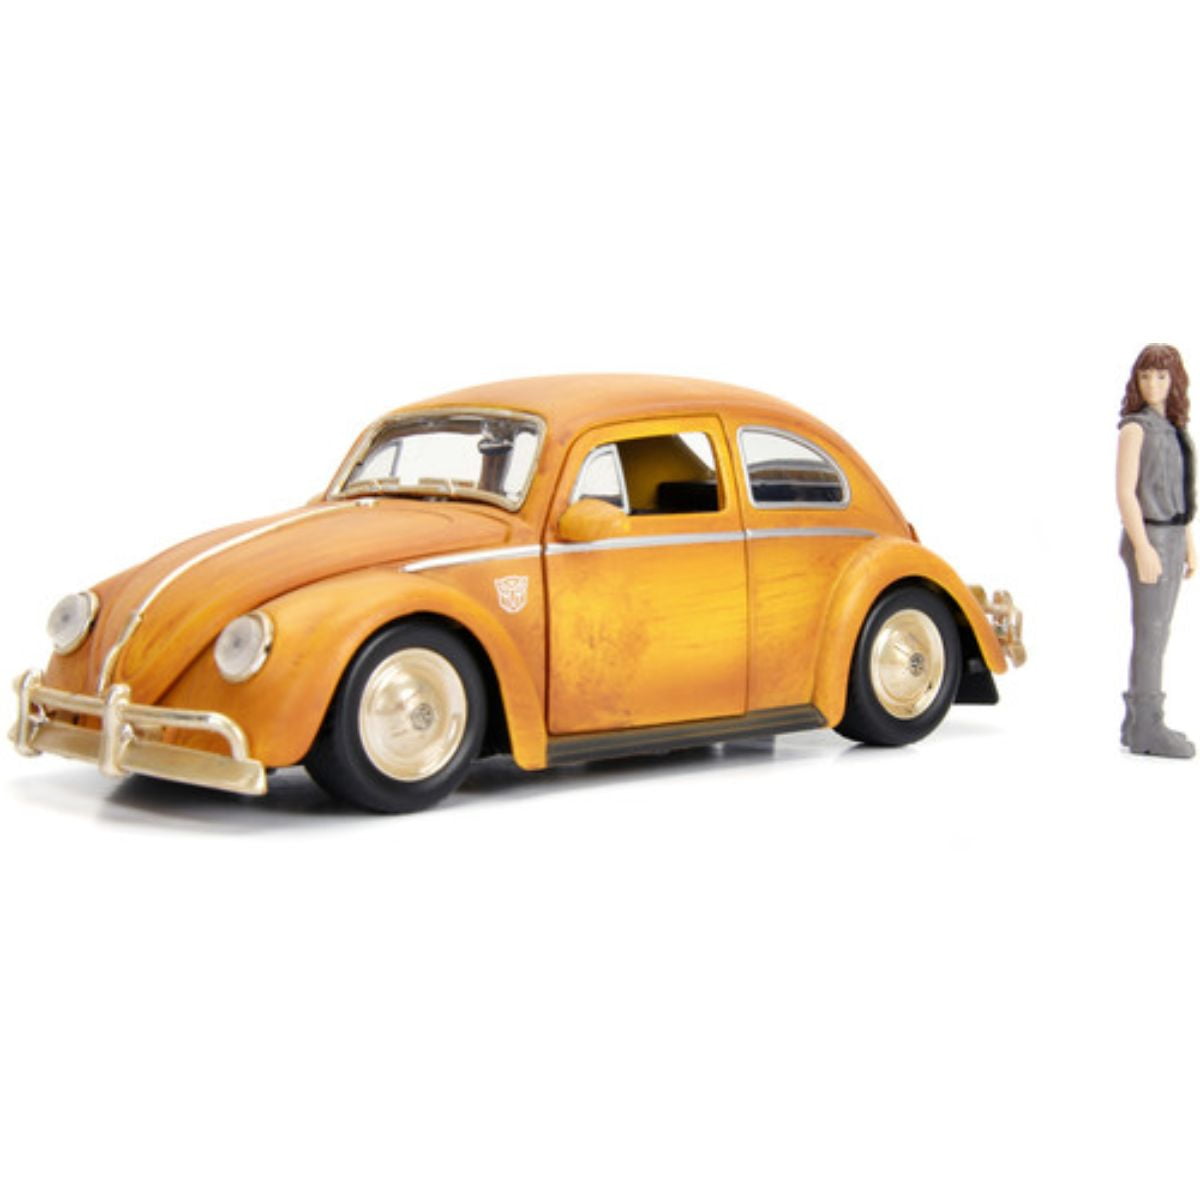 1/64 Diecast Body Working Hood & Doors NEW VW Slug Bug 1953 Volkswagen Beetle 